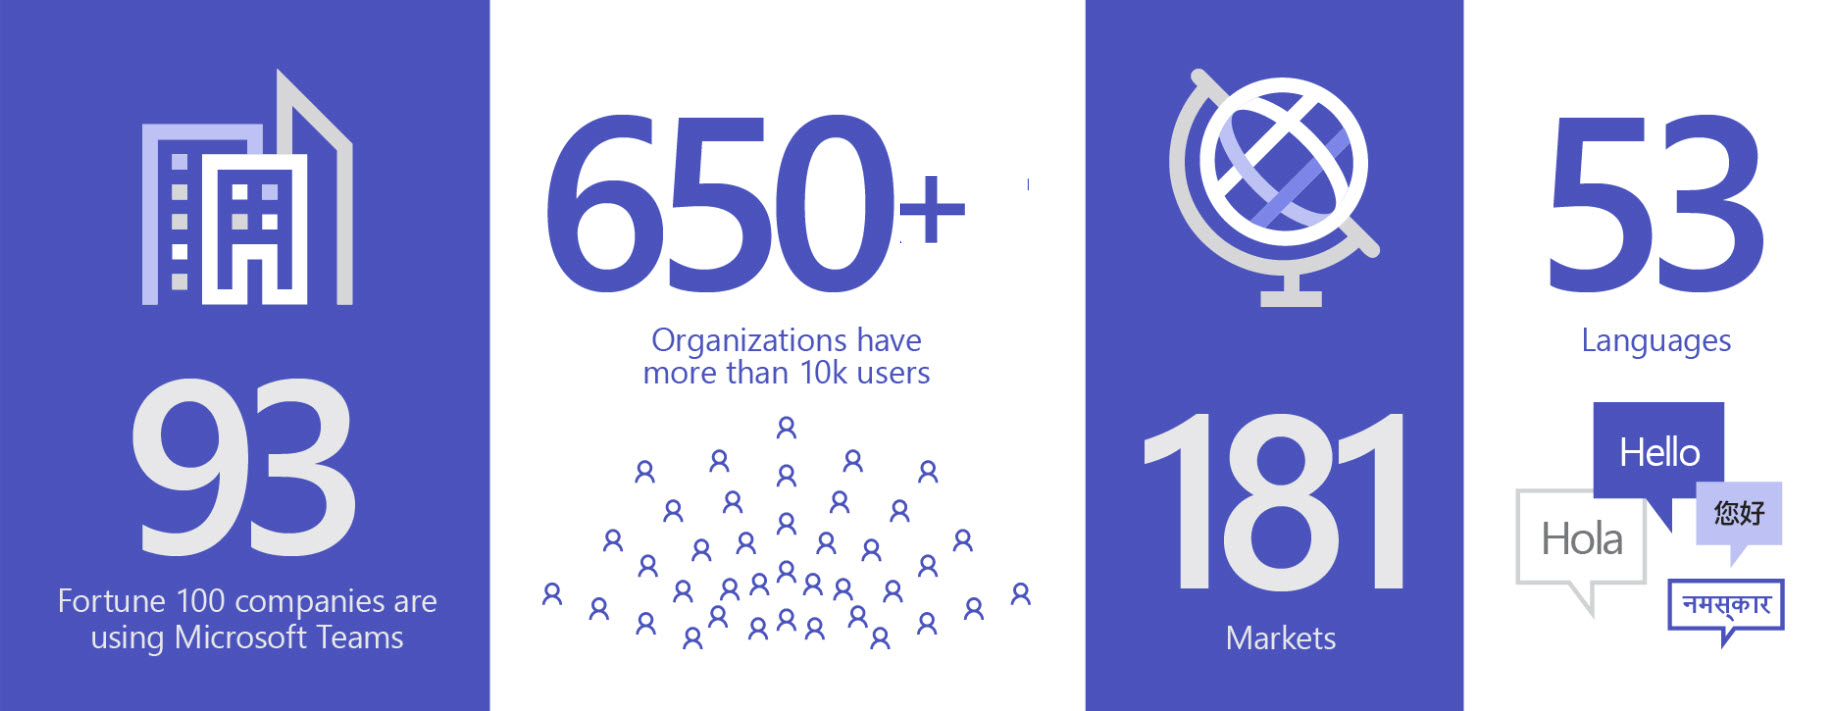 93 の組織が Teams を使用しており、ユーザー数 1 万人を超える組織の数は 650 を超え、市場の数は 181、言語の数は 53 であることを示す画像。